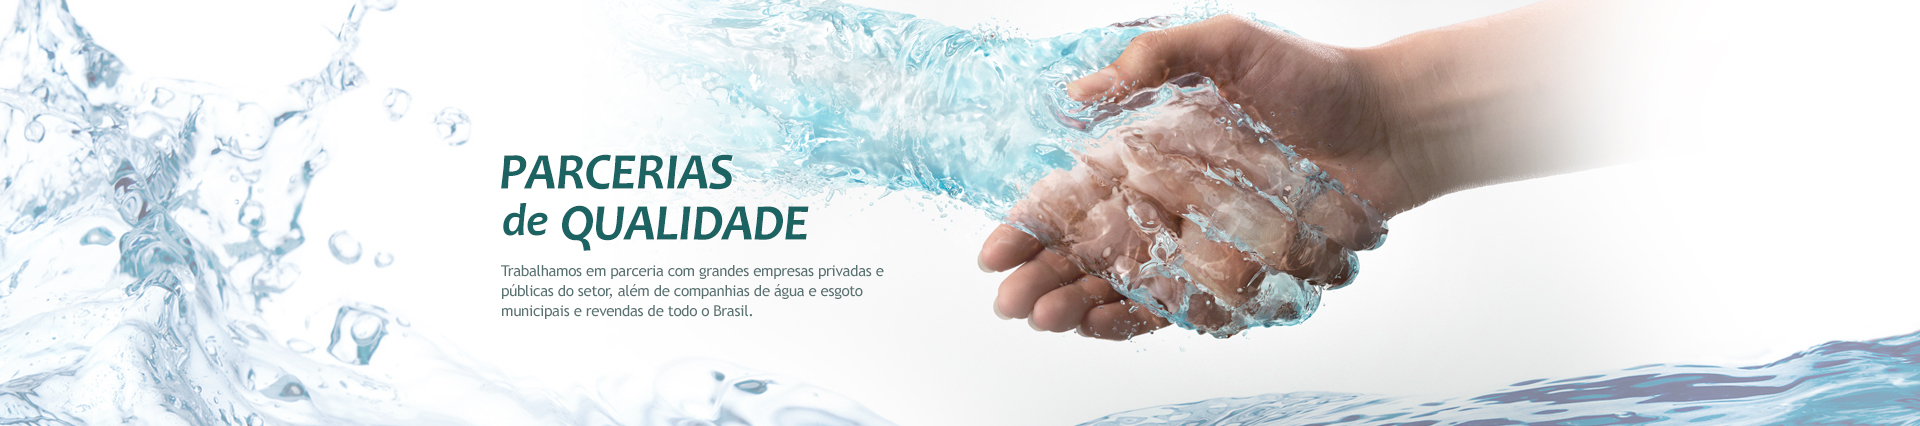 Parcerias de Qualidade - Trabalhamos em parceria com grandes empresas privadas e públicas do setor, além de companhias de água e esgoto municipais além de revendadas de todo o Brasil.